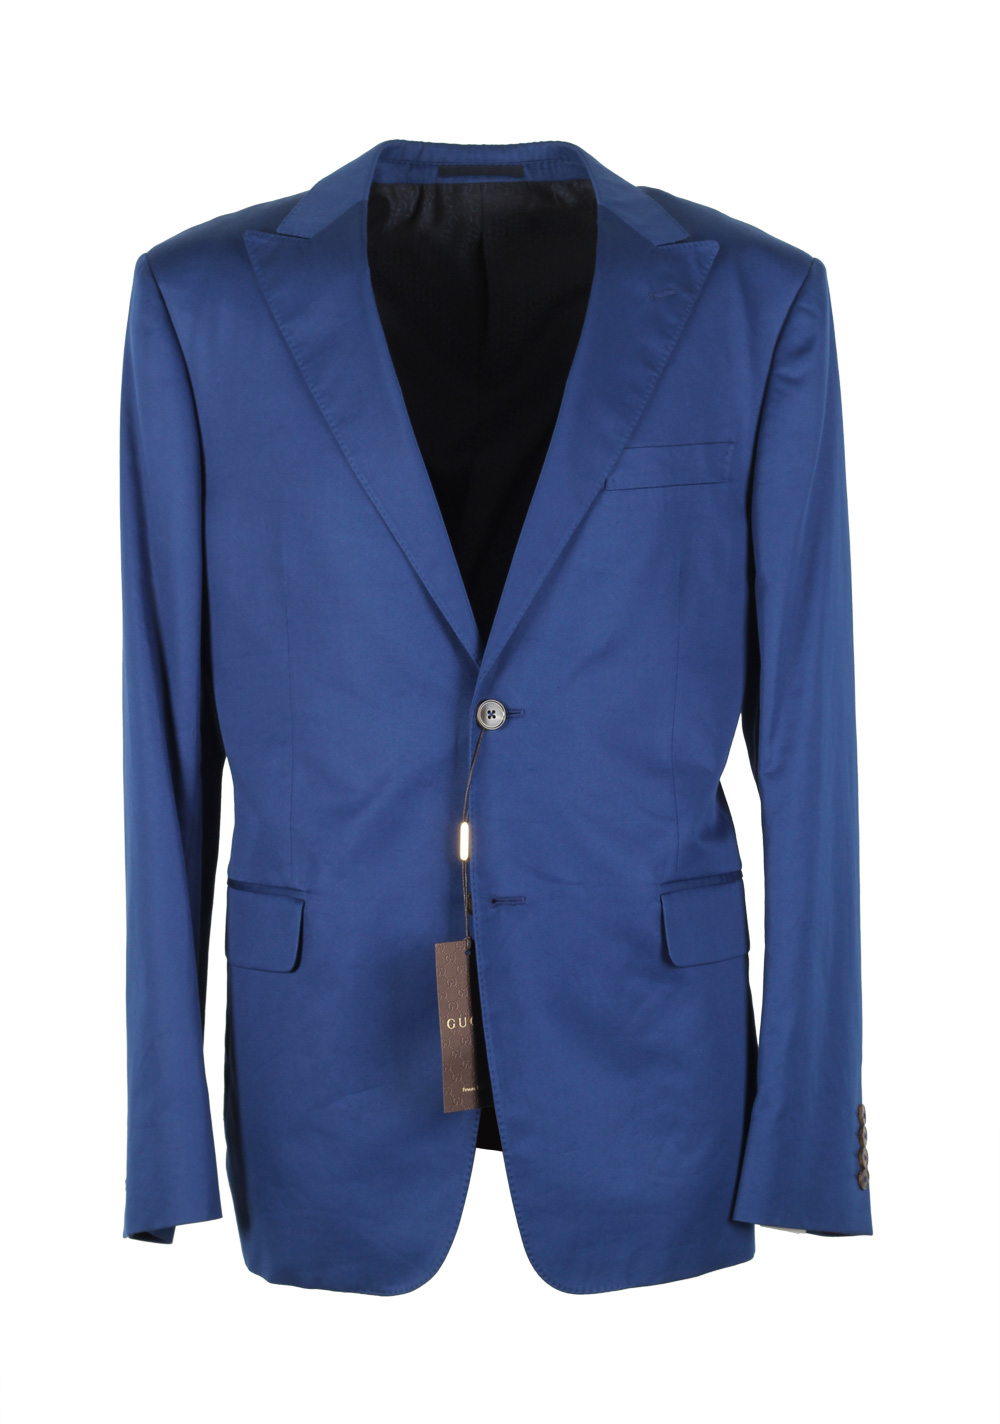 gucci suit blue